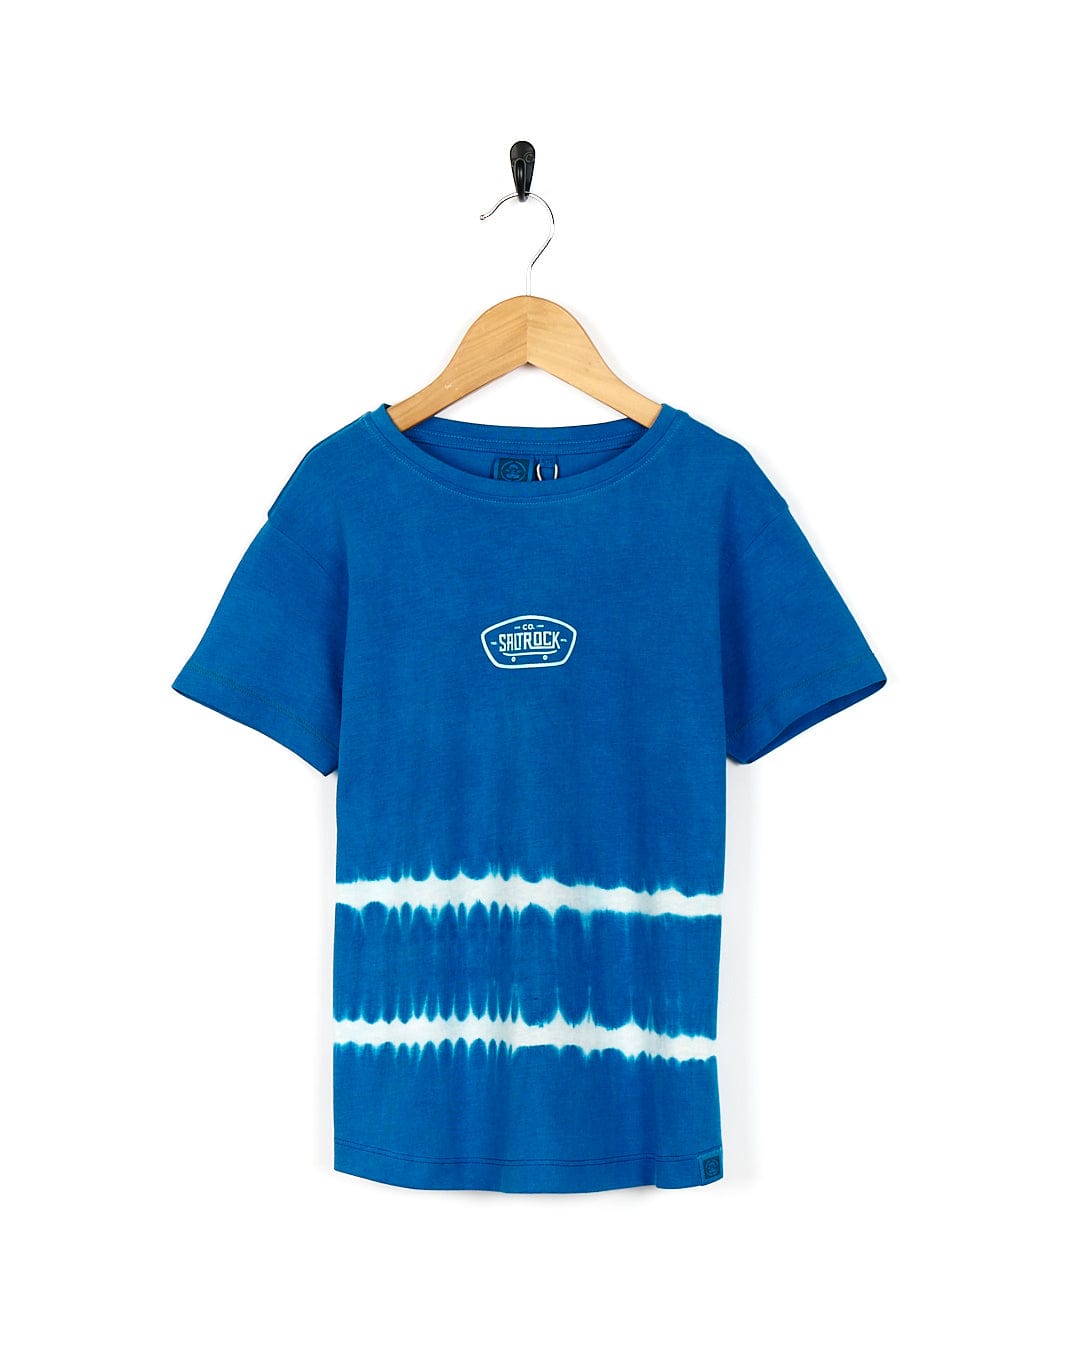 A Saltrock Hardskate - Kids Tie Dye Short Sleeve T-Shirt in blue on a swinger.